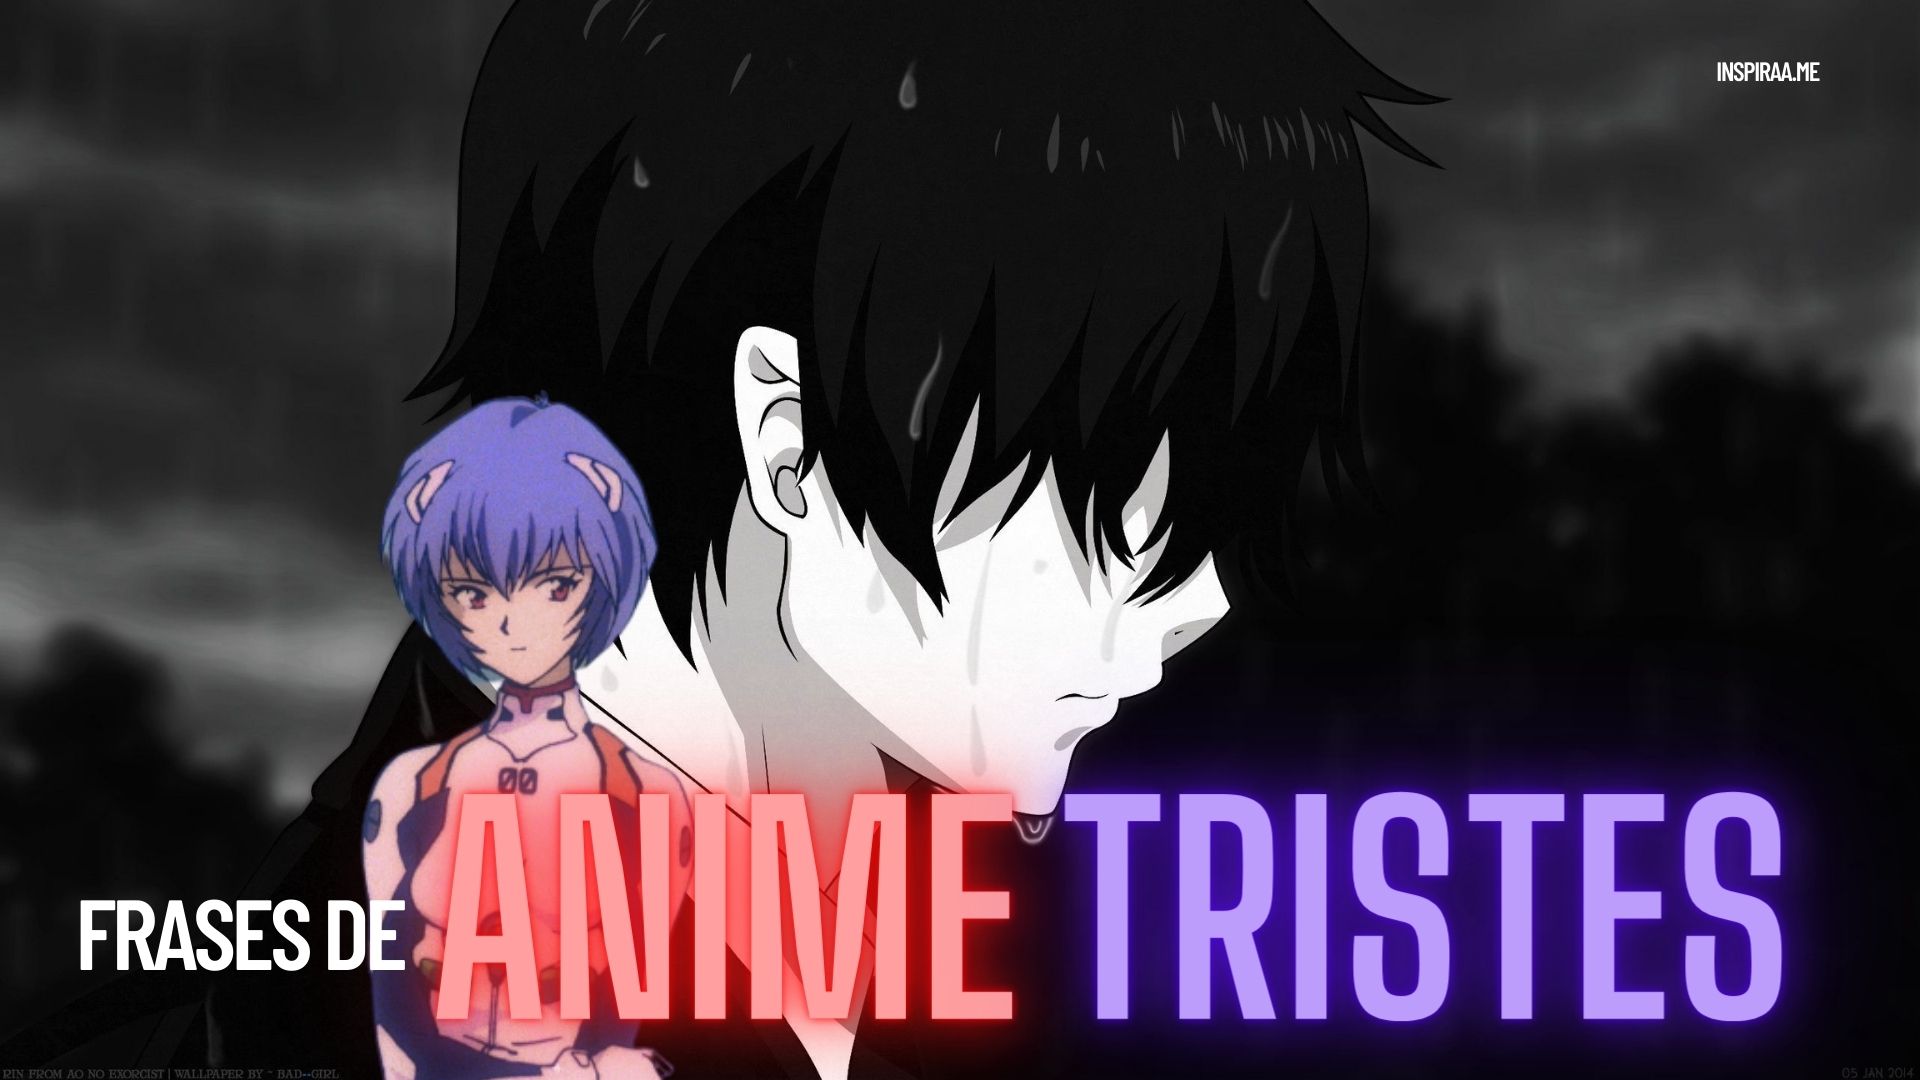 119 Frases tristes y depresivas de Anime que ¡te romperán el corazón!